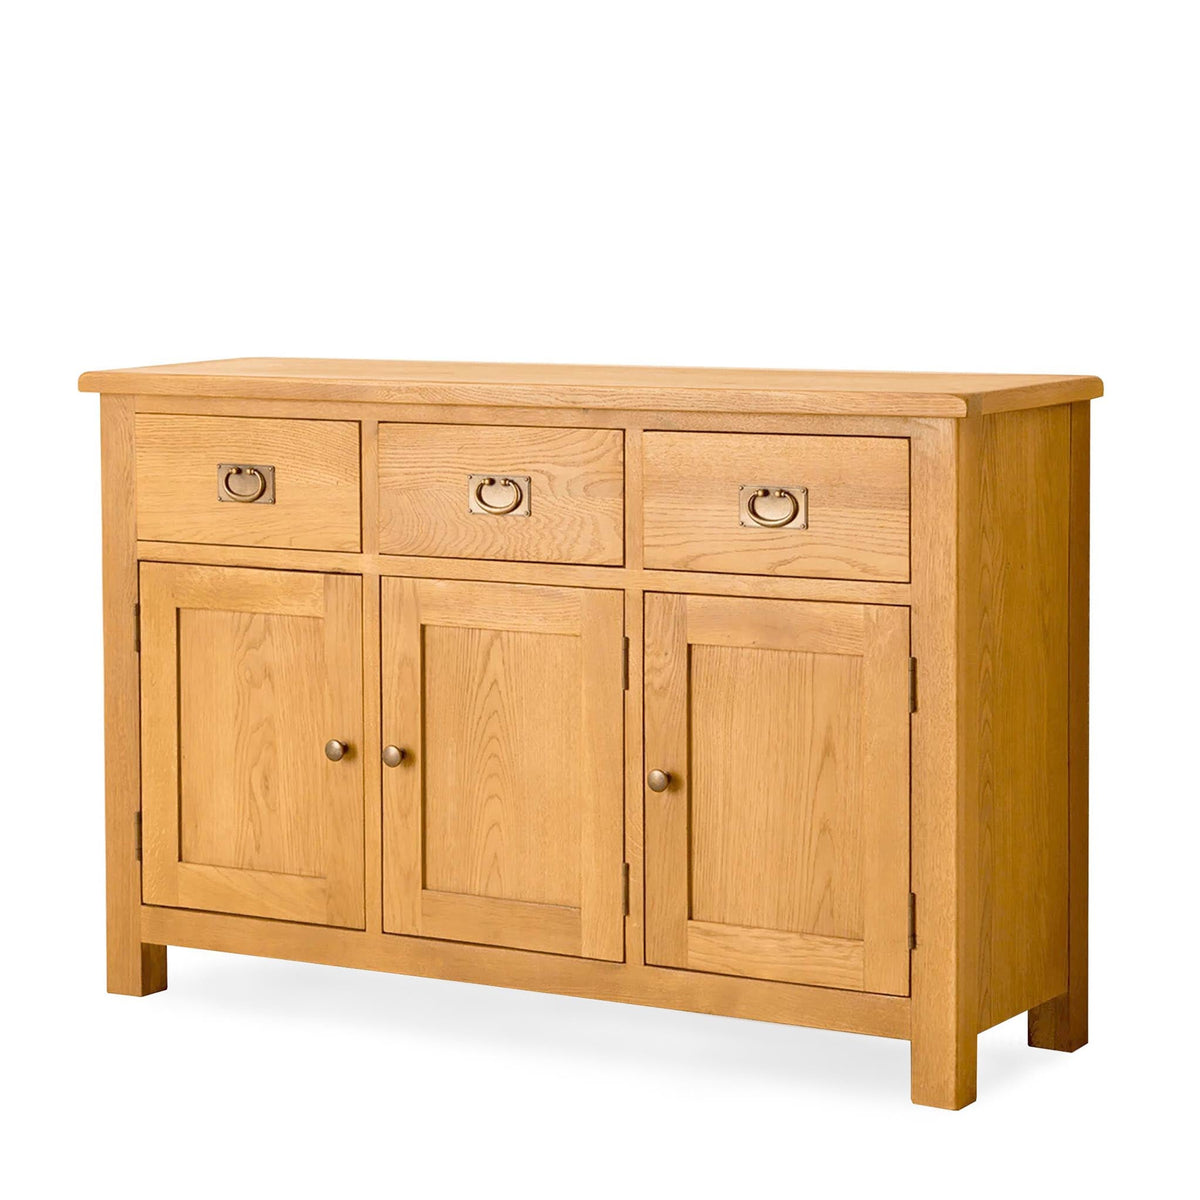 Lanner Oak Large Sideboard Unit by Roseland Furniture